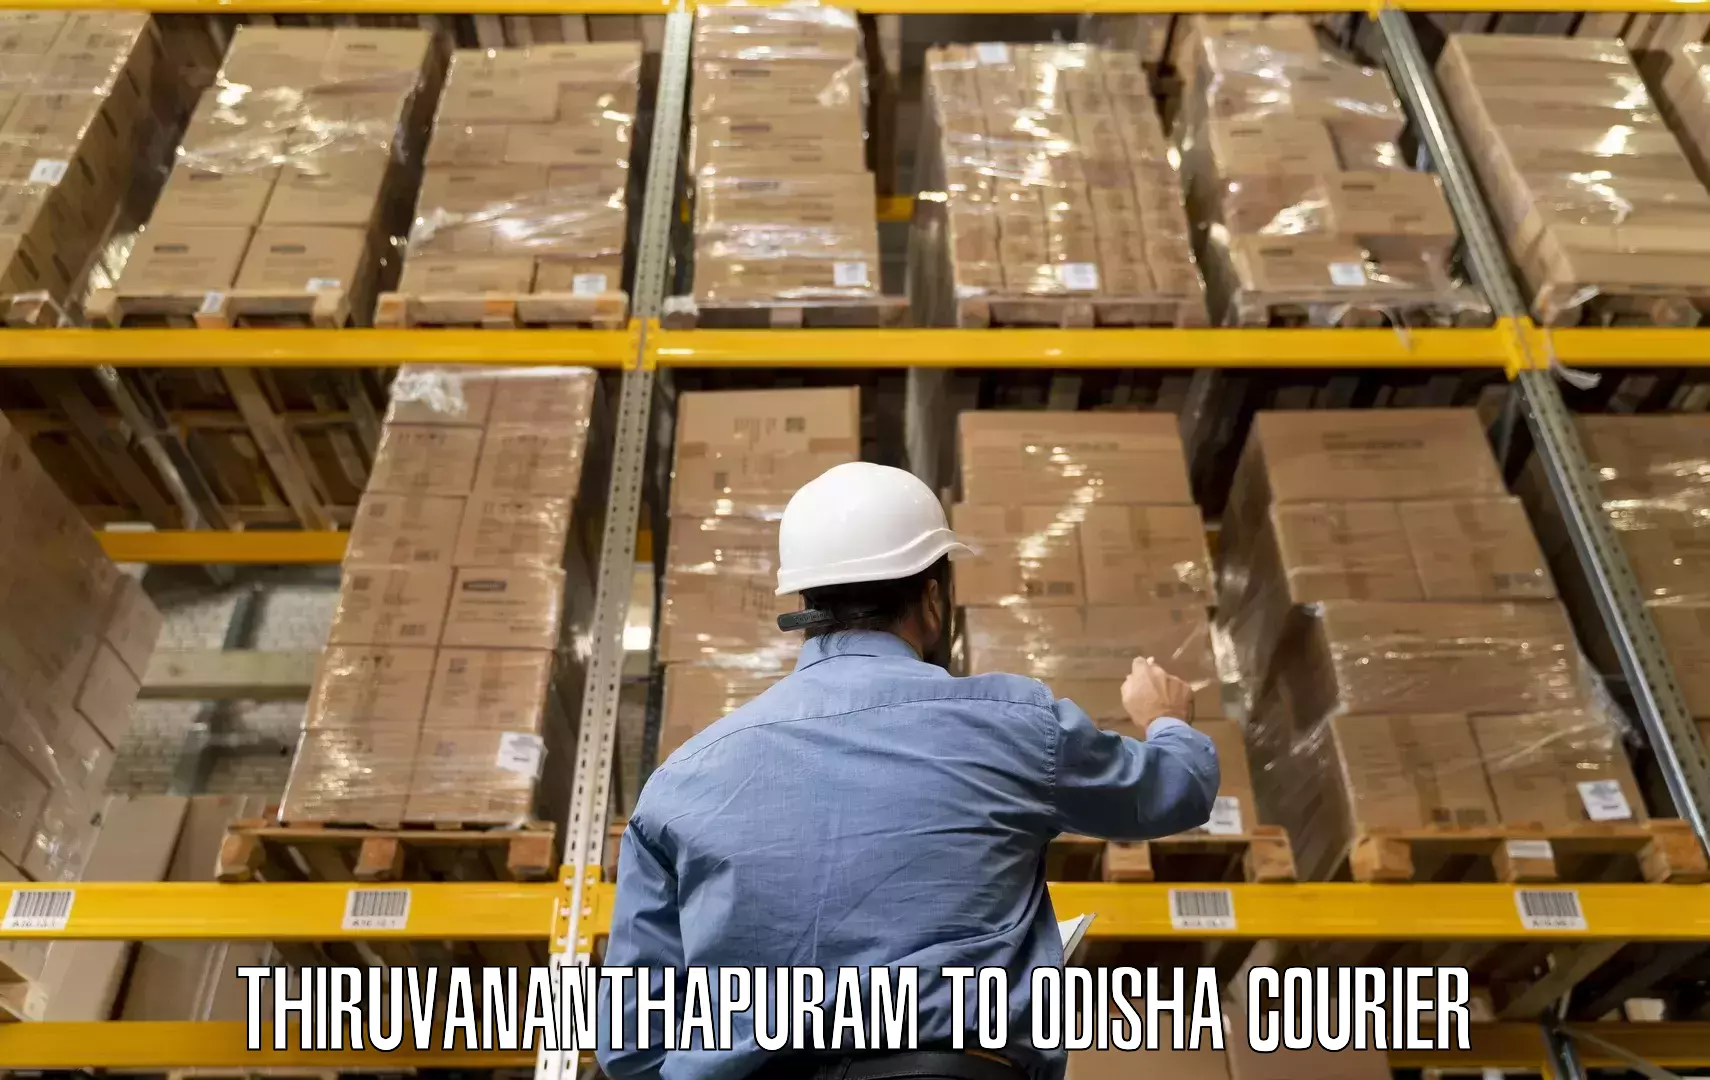 Professional movers and packers Thiruvananthapuram to Odisha